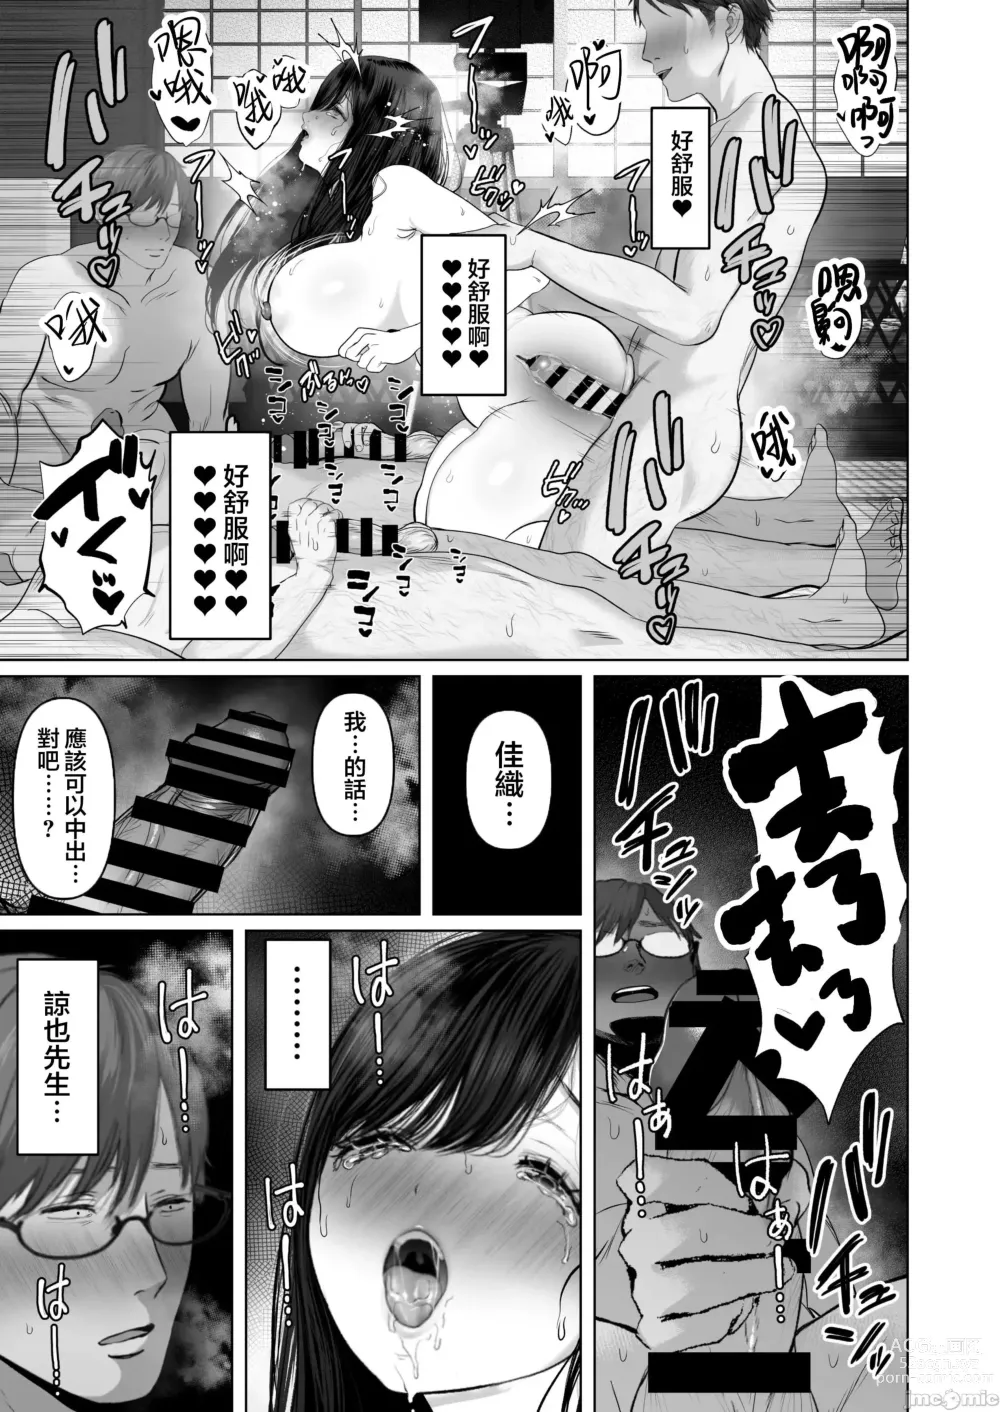 Page 539 of doujinshi Anata ga Nozomu nara 1-5